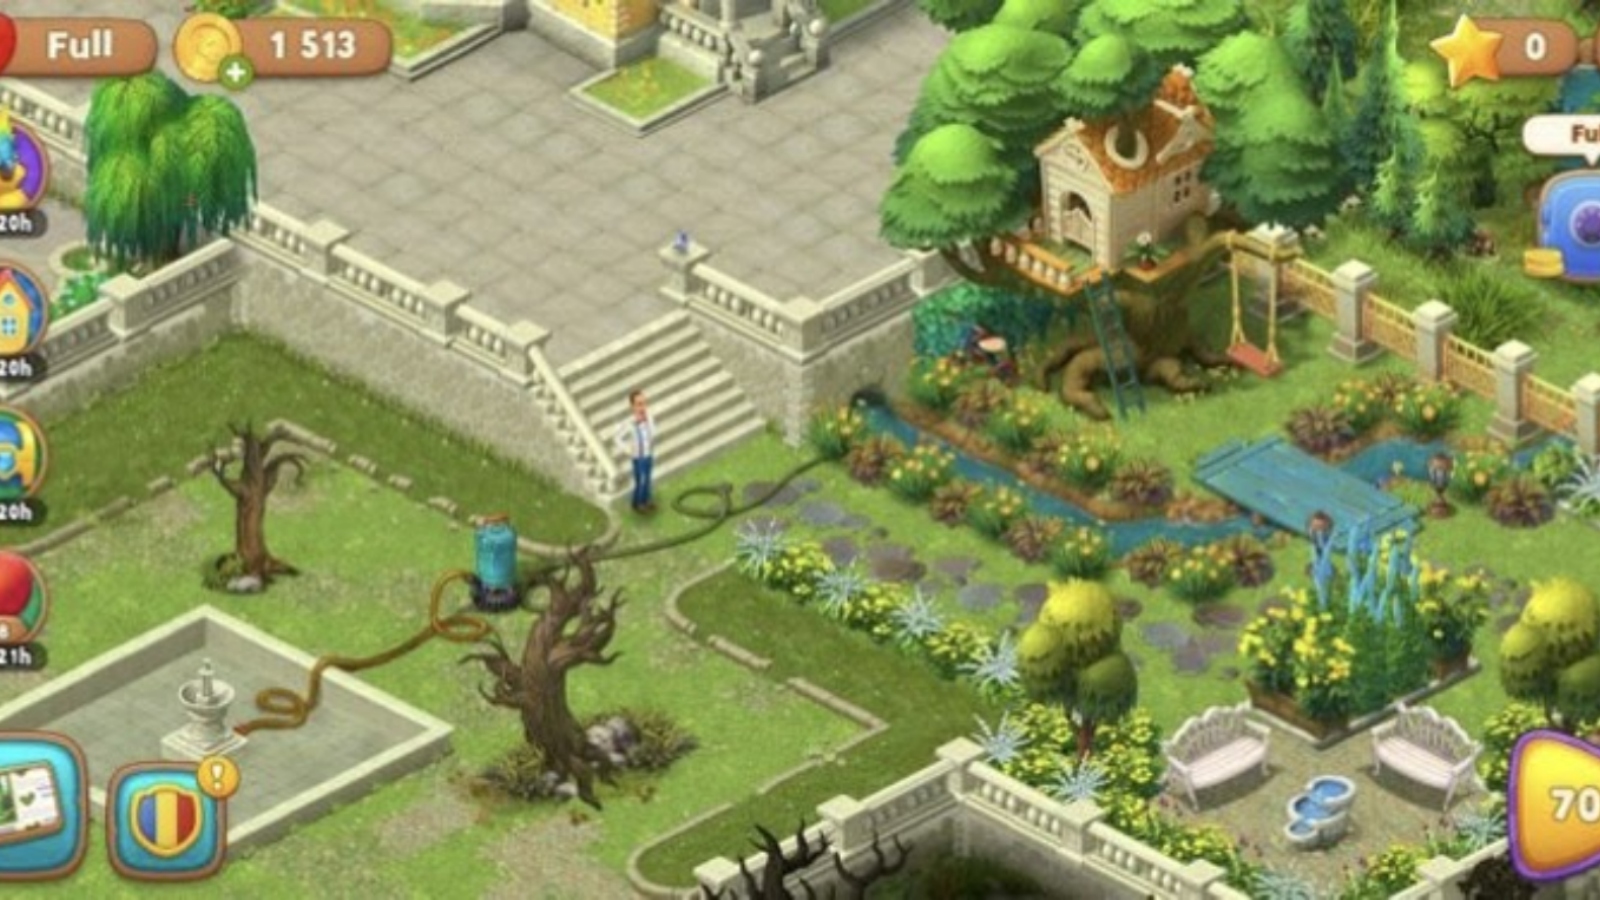 Игра как вернуть ее. Финал игры Gardenscapes. Игра Gardenscapes секреты прохождения. Gardenscapes 10000 уровень. Gardenscapes фото уровней.